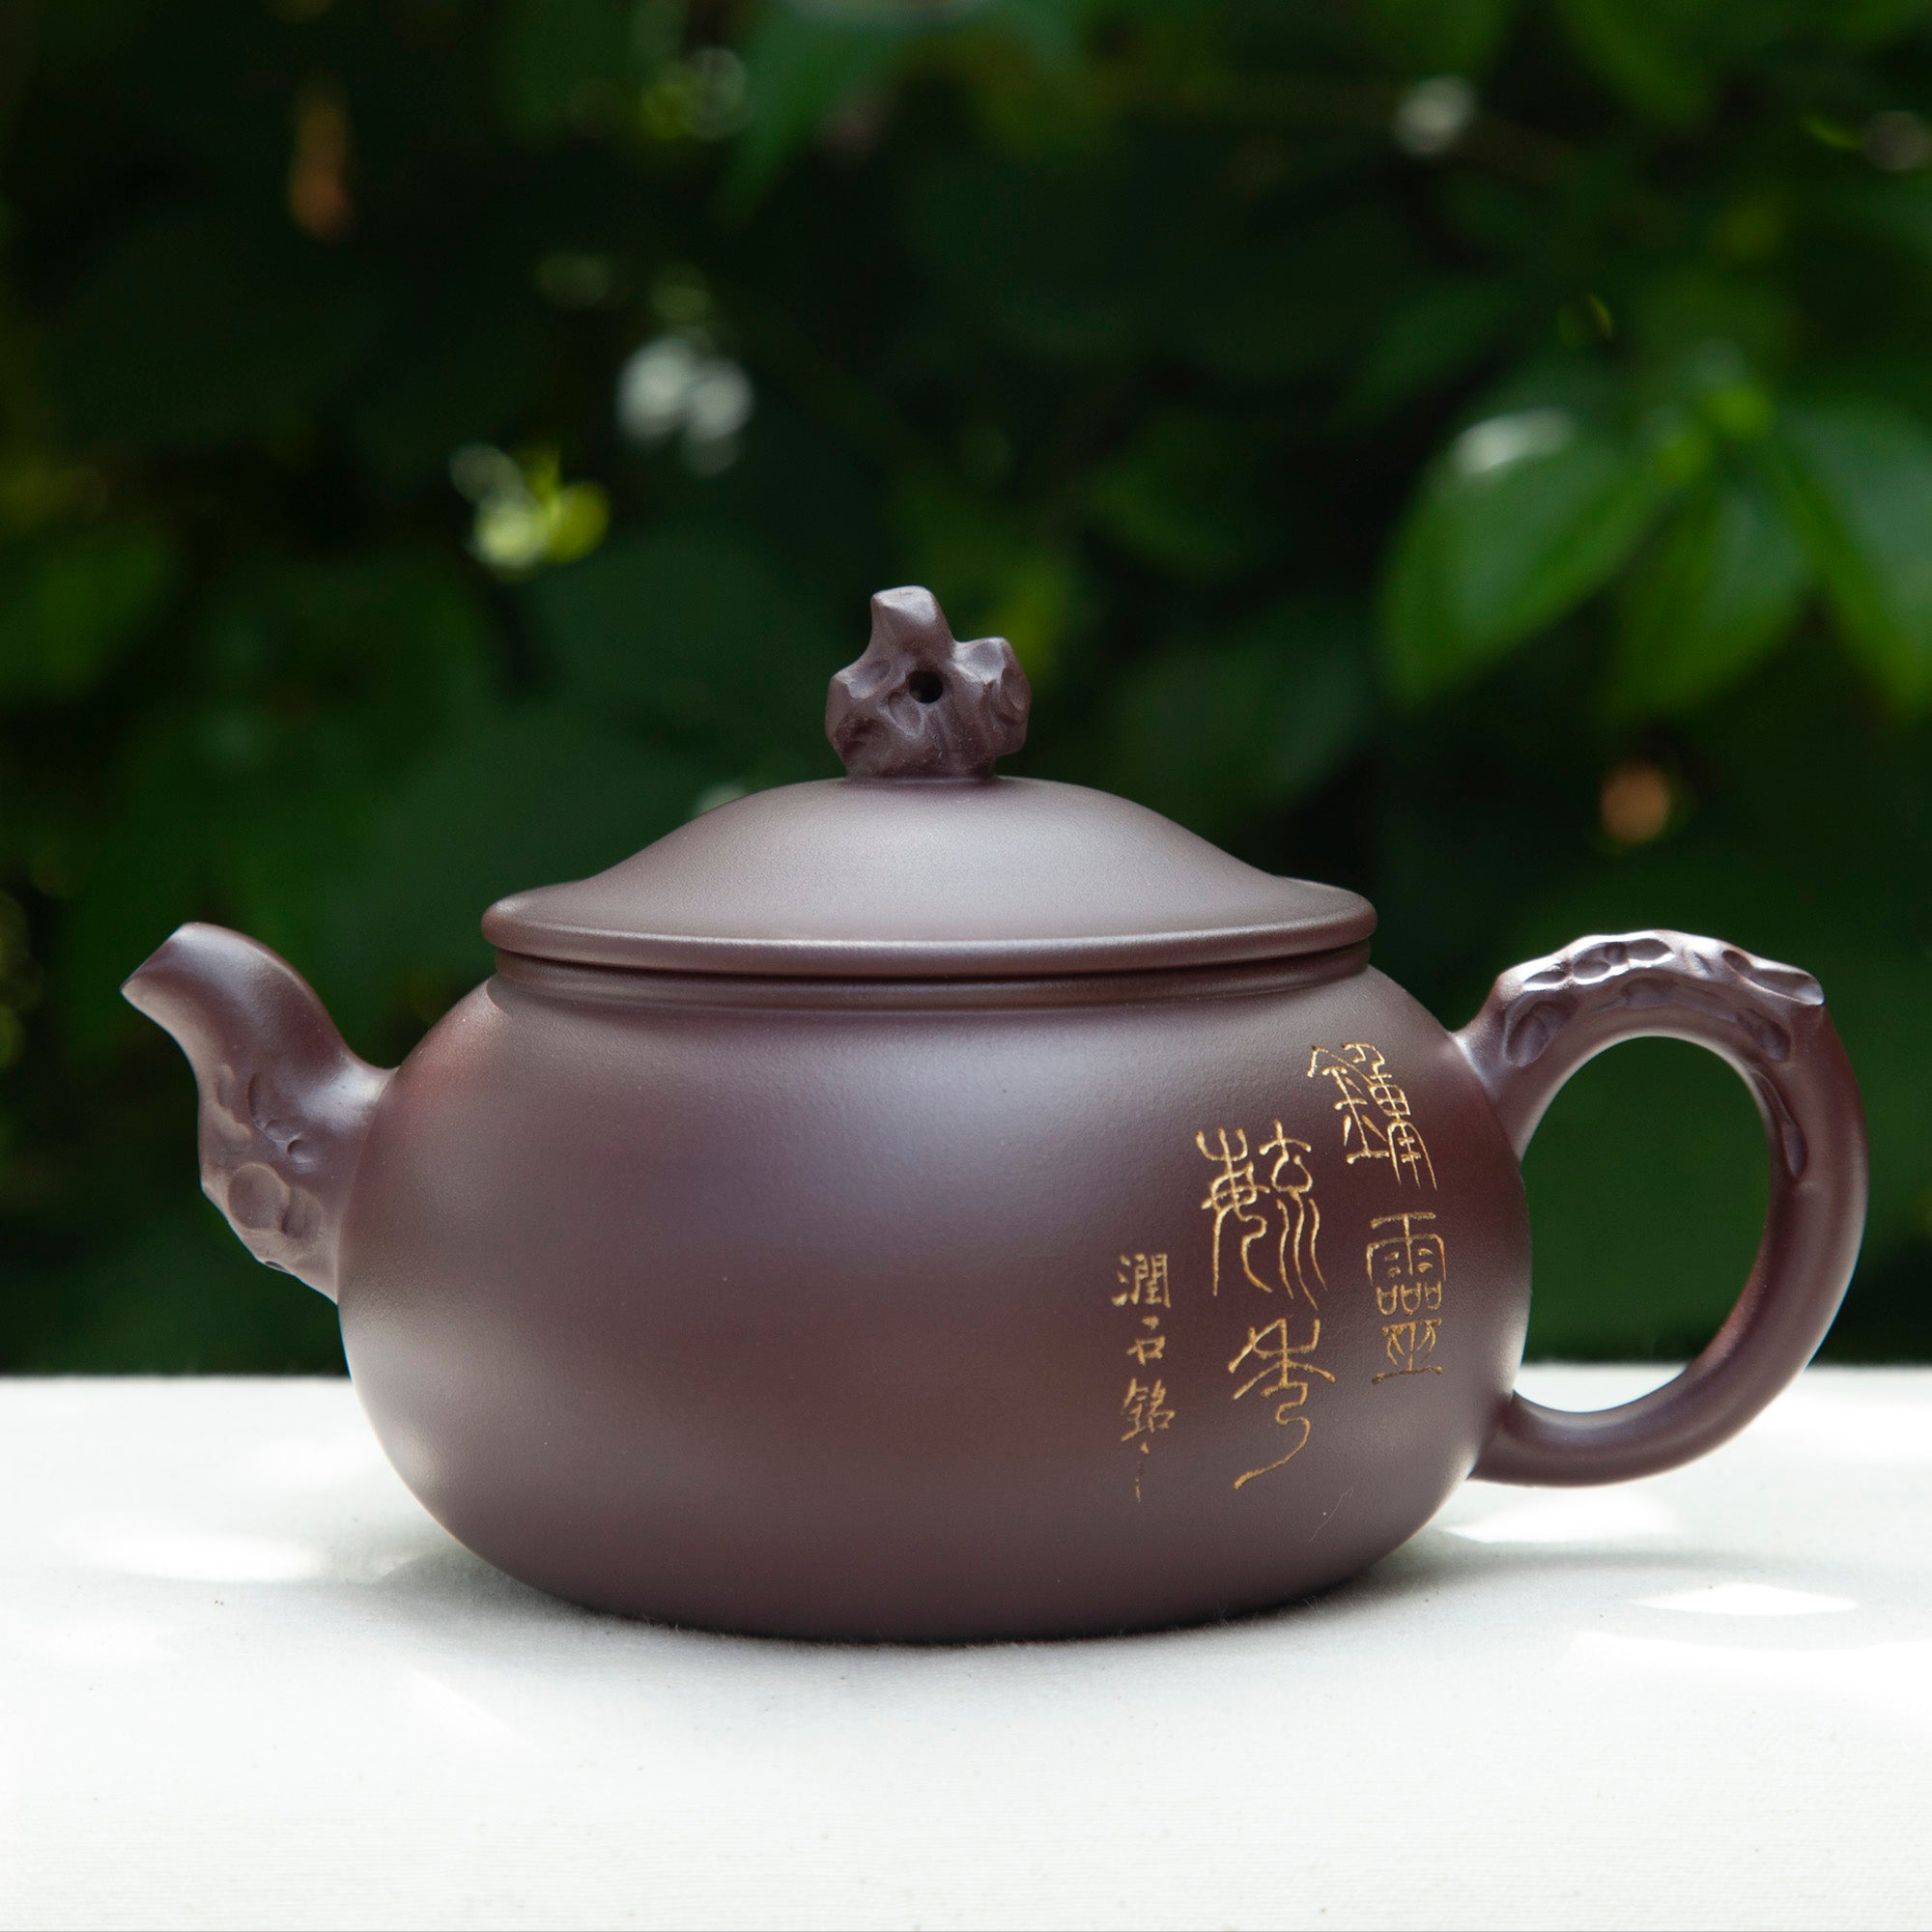 https://the-chinese-tea-company.com/cdn/shop/files/TaiHuShi1_2000x.jpg?v=1692650475